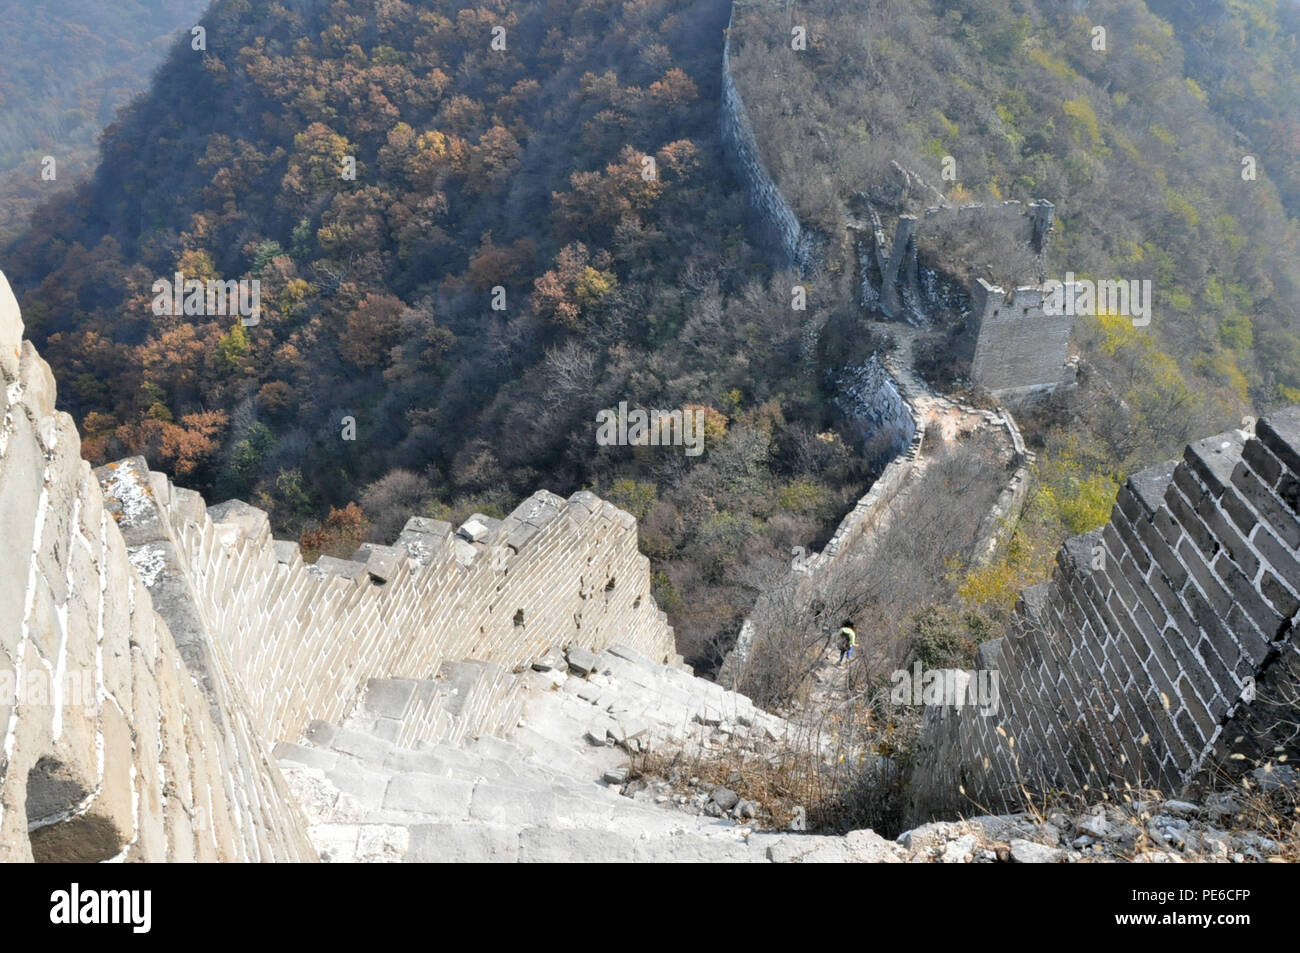 Beijin, Beijin, China. 13 Aug, 2018. Peking, China - Große Mauer Jiankou ist von einigen Menschen als den schönsten Abschnitt der Großen Mauer betrachtet und ist ein gutes Beispiel für ''Wild Great Wall''. Es ist eine beliebte fotografische Hotspot geworden und Wanderziele in den letzten Tagen. Jiankou ist als ''Pfeil Nock'' auf Englisch übersetzt, da die Form der Berge, wo die walll errichtet wurde, ist wie ein Pfeil mit der collpased Ridge öffnen wie der Pfeil Nock. Der größte Teil der Mauer wurde entlang der Kanten mit steilen Klippen auf jeder Seite gebaut. Deshalb müssen Sie für eine gute Fitness und g vorbereiten Stockfoto